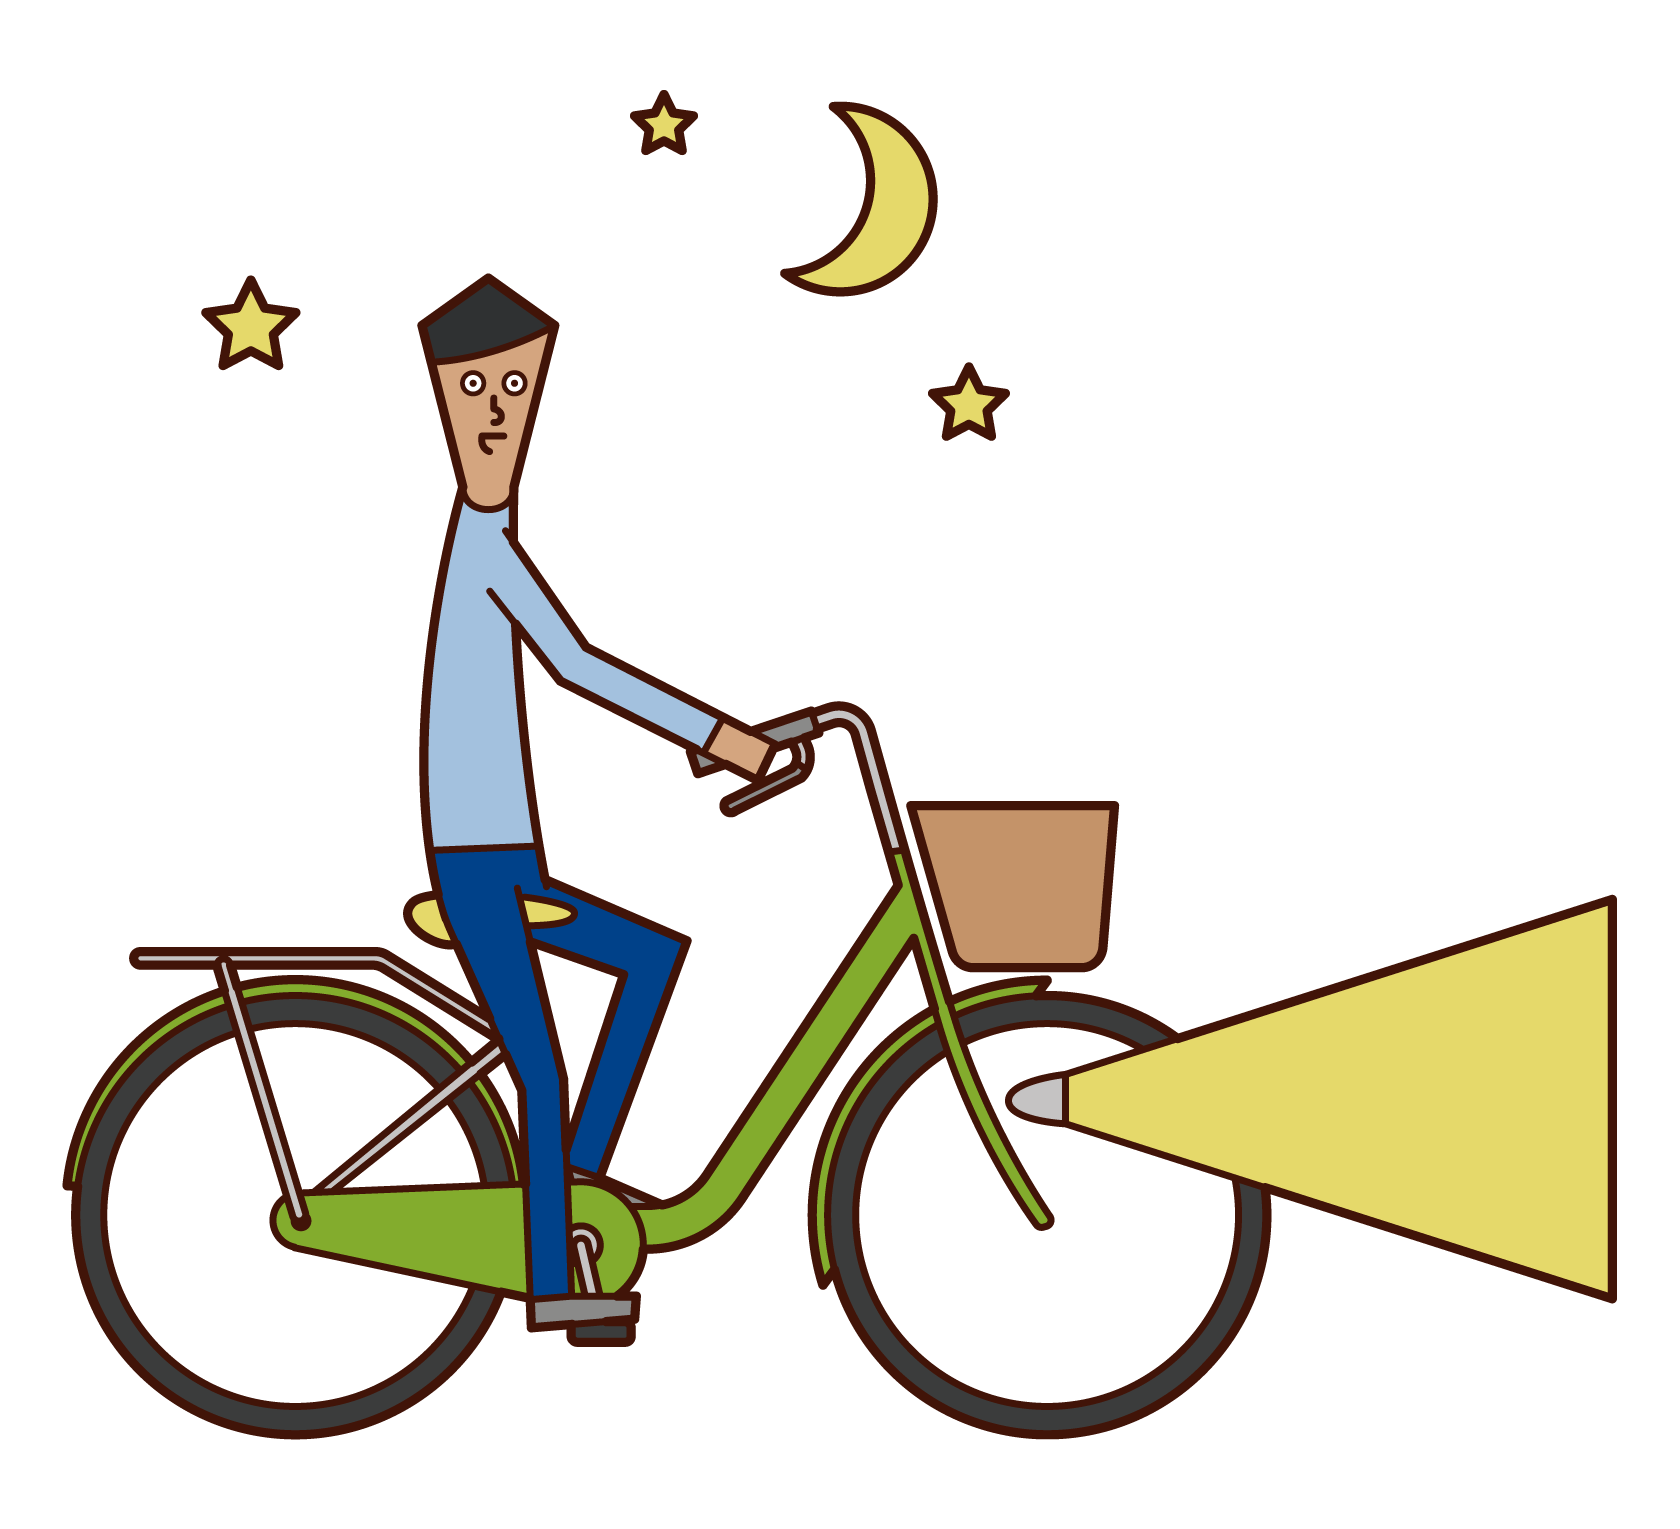 夜に灯火して自転車を運転する人 男性 のイラスト フリーイラスト素材 Kukukeke ククケケ